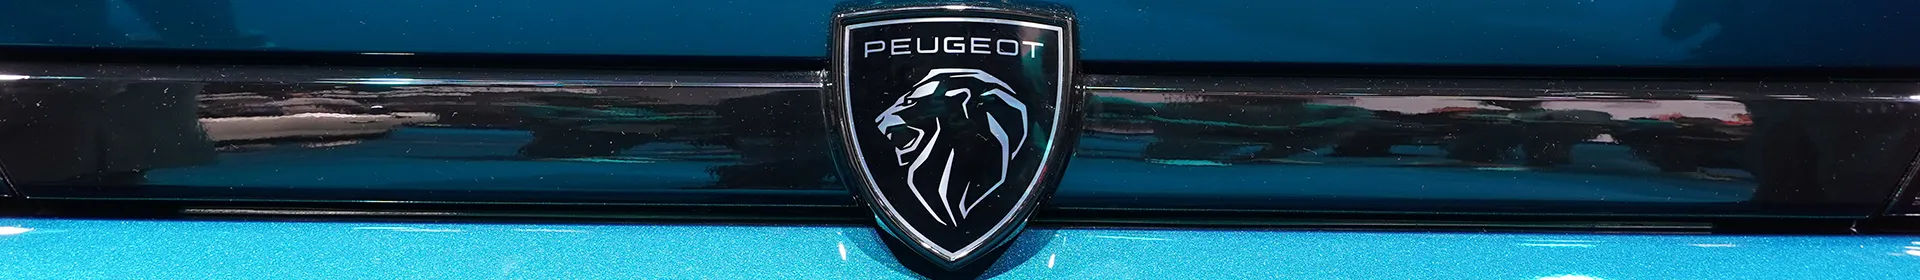  Veículos Peugeot